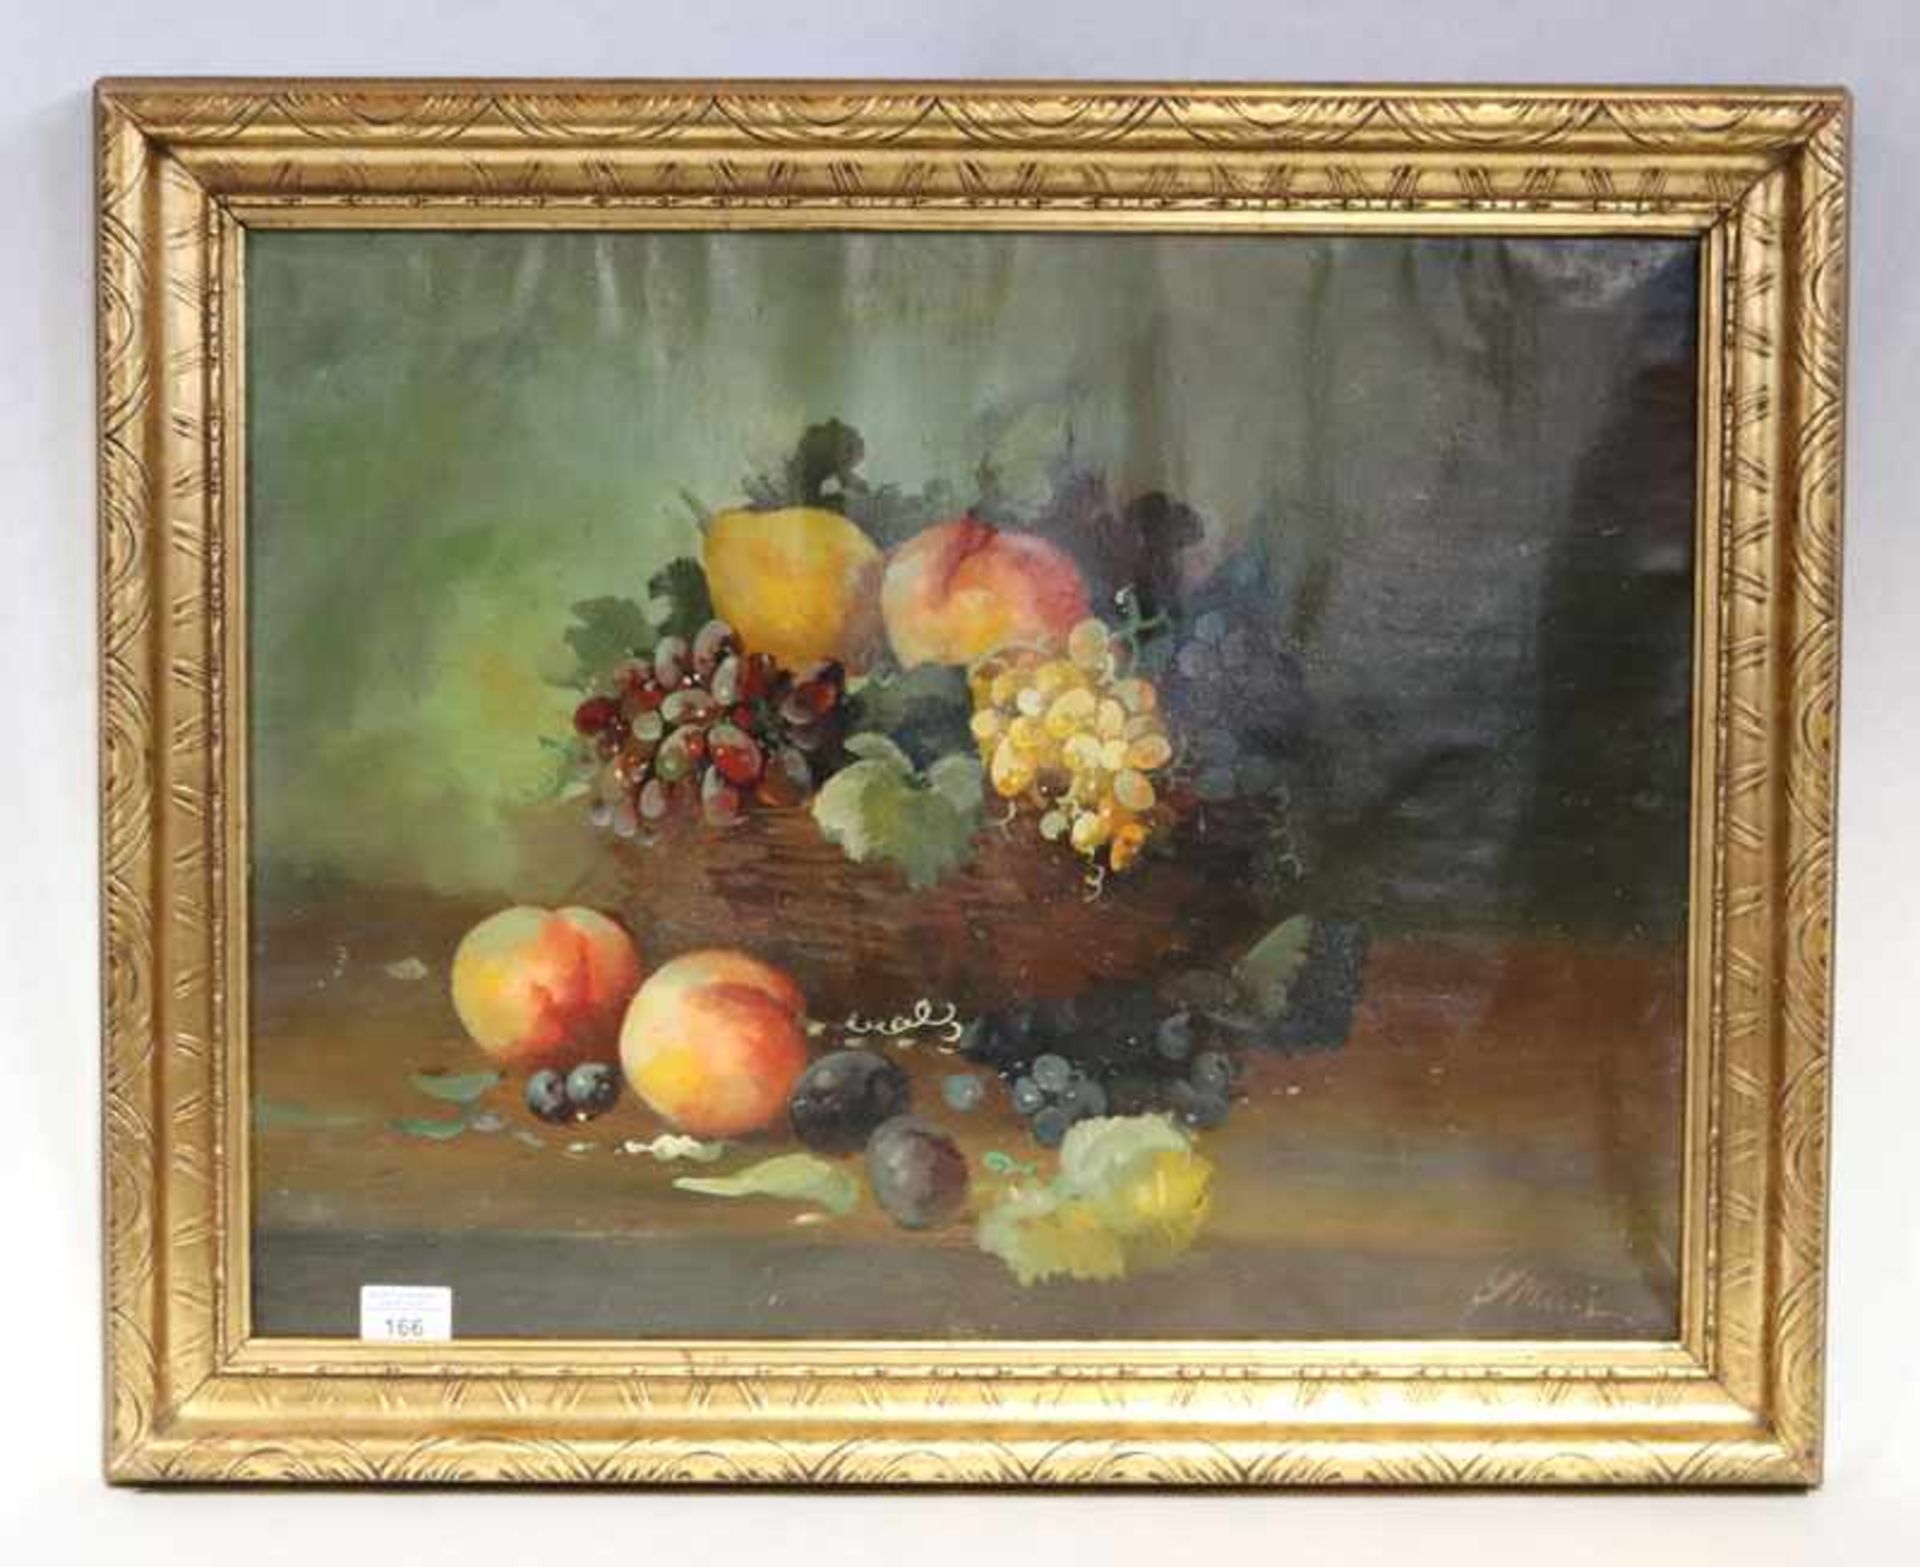 Gemälde ÖL/LW 'Obststillleben', unleserlich signiert, 19. Jahrhundert, LW wellig, gerahmt, Rahmen